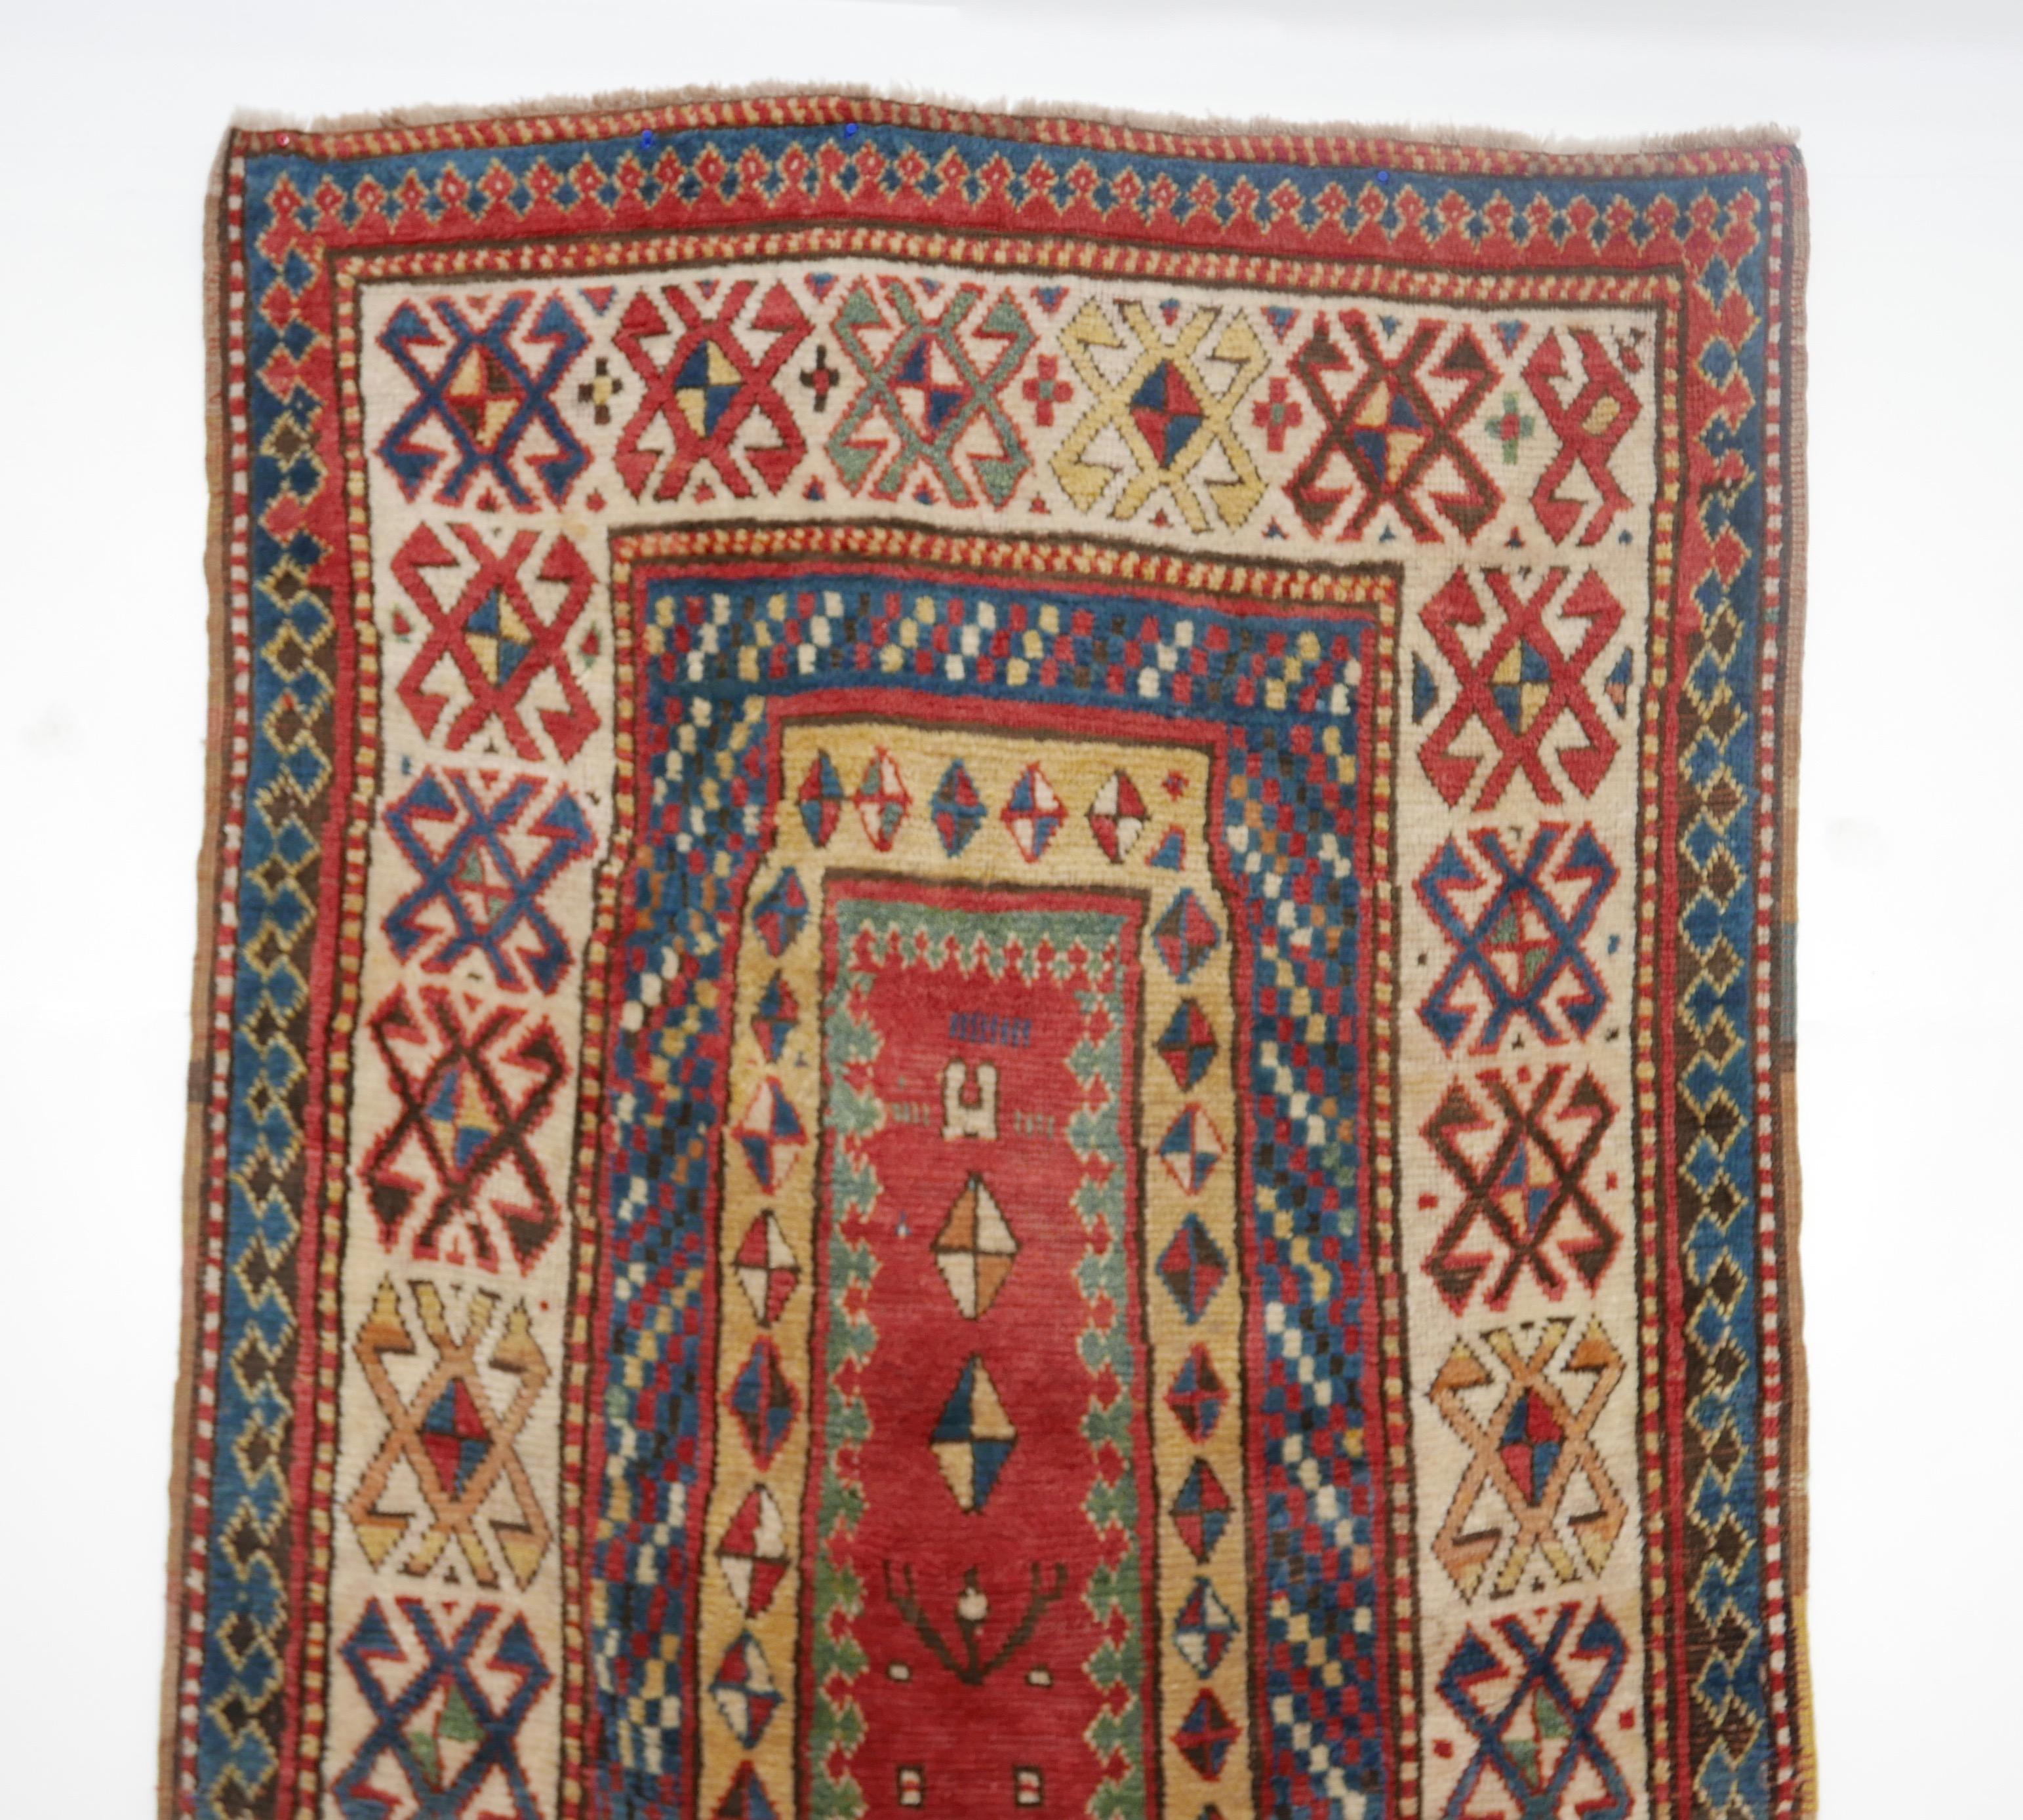 Antique Kazak Wool Rug, 19th Century Kazakhstan 5